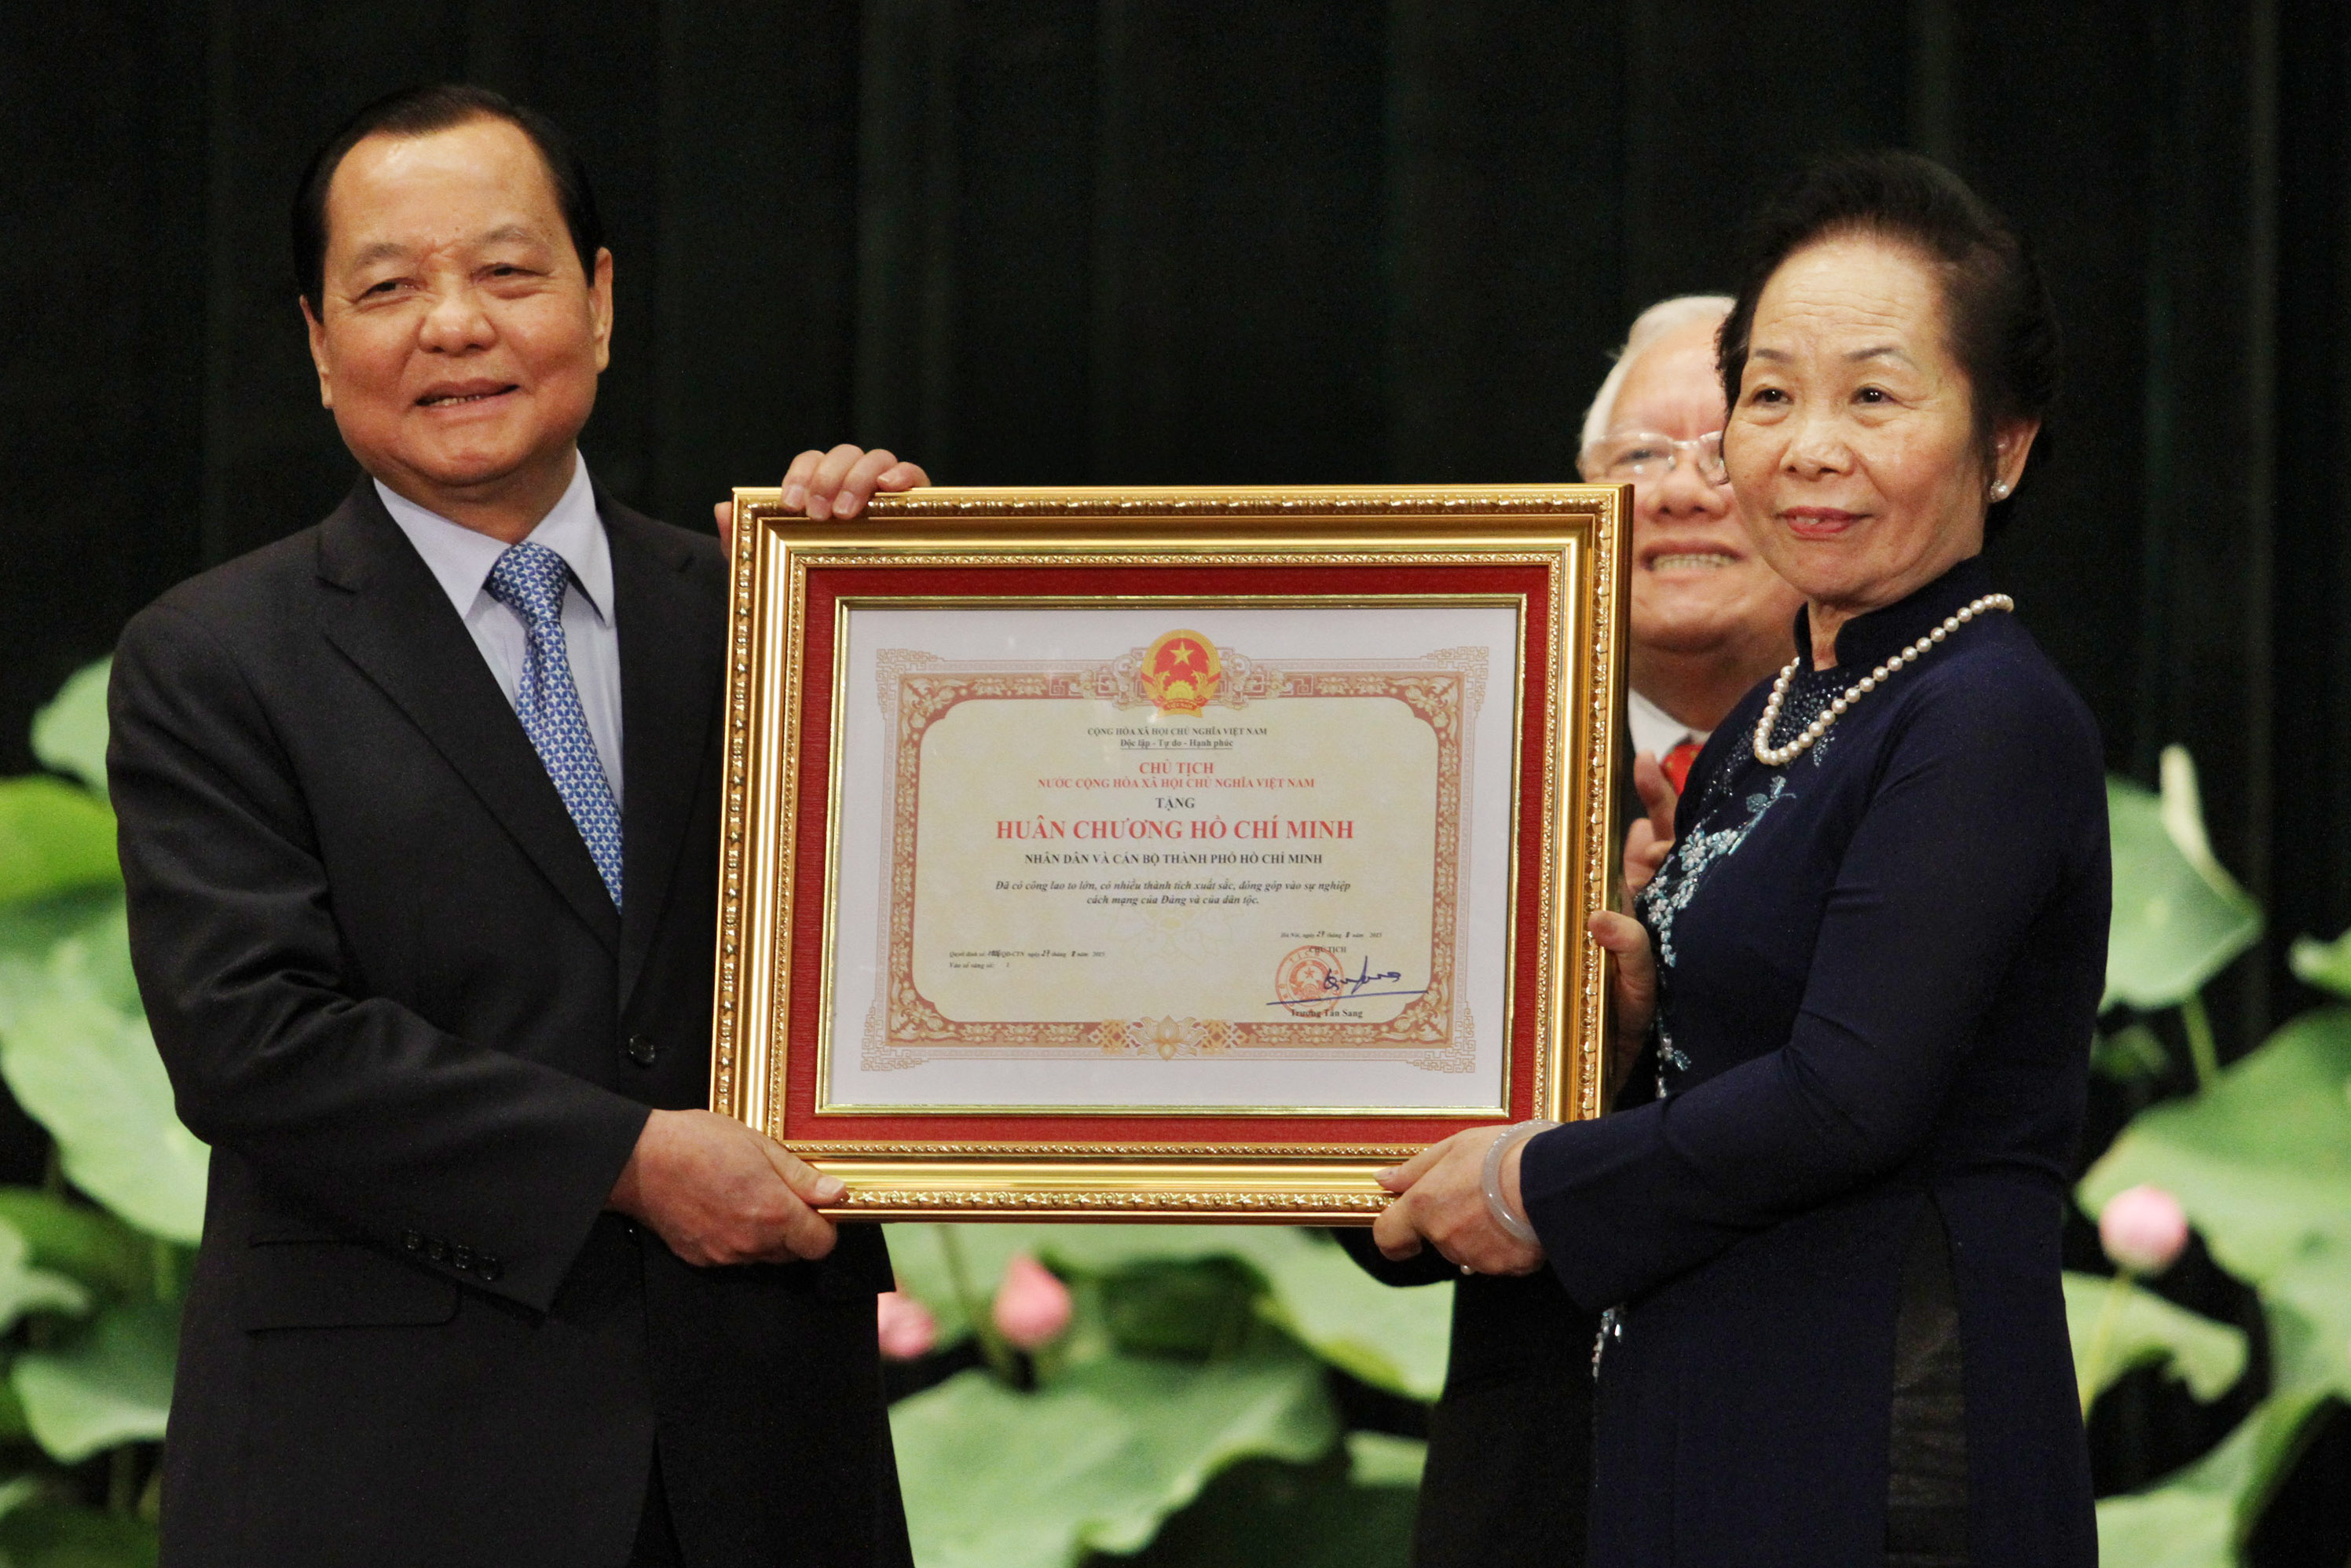 TP.HCM đón nhận Huân chương Hồ Chí Minh